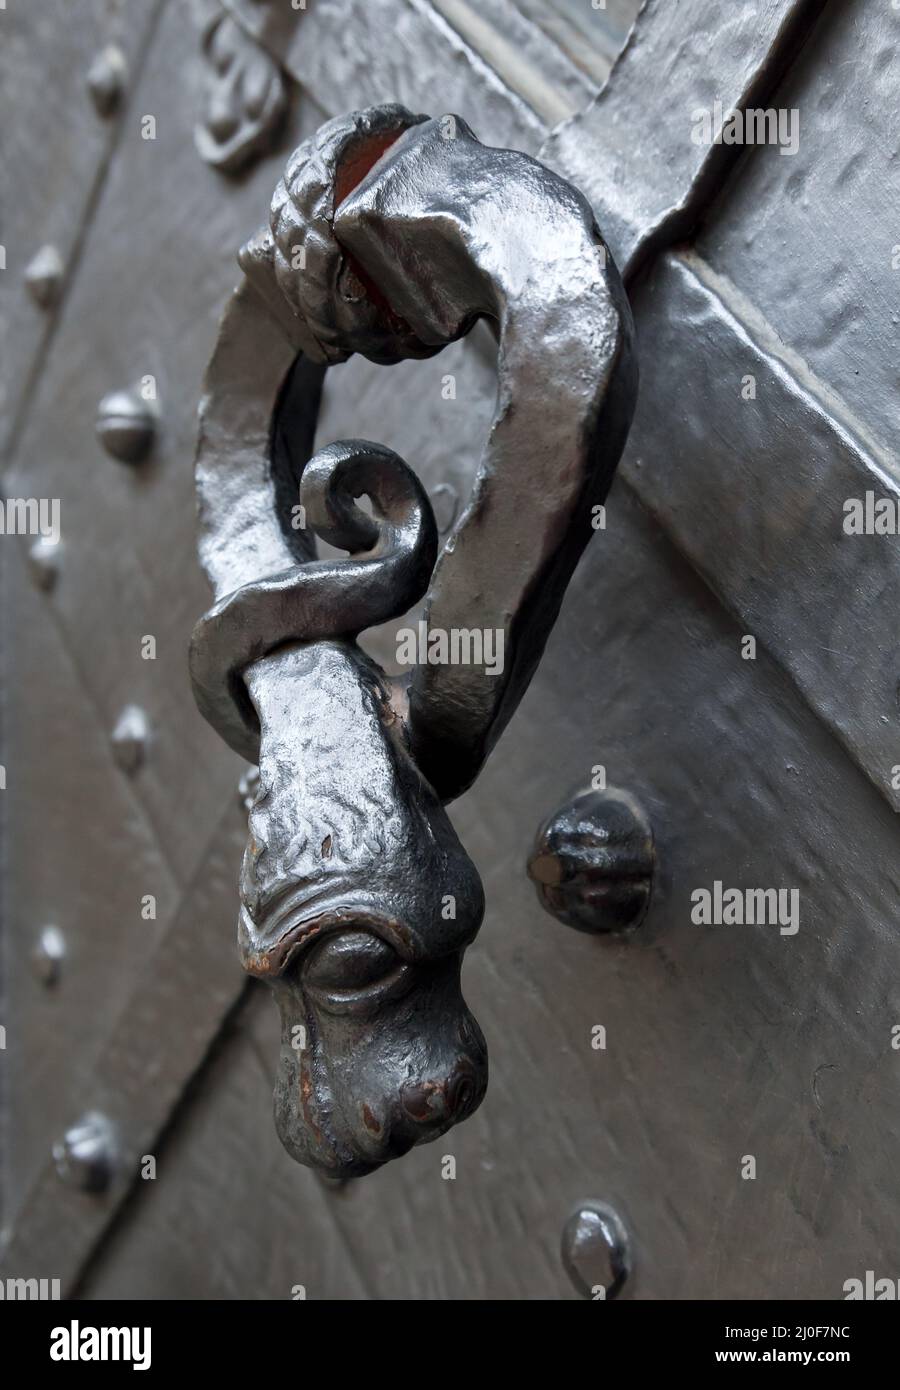 Puerta de un caballero en forma de serpiente Foto de stock